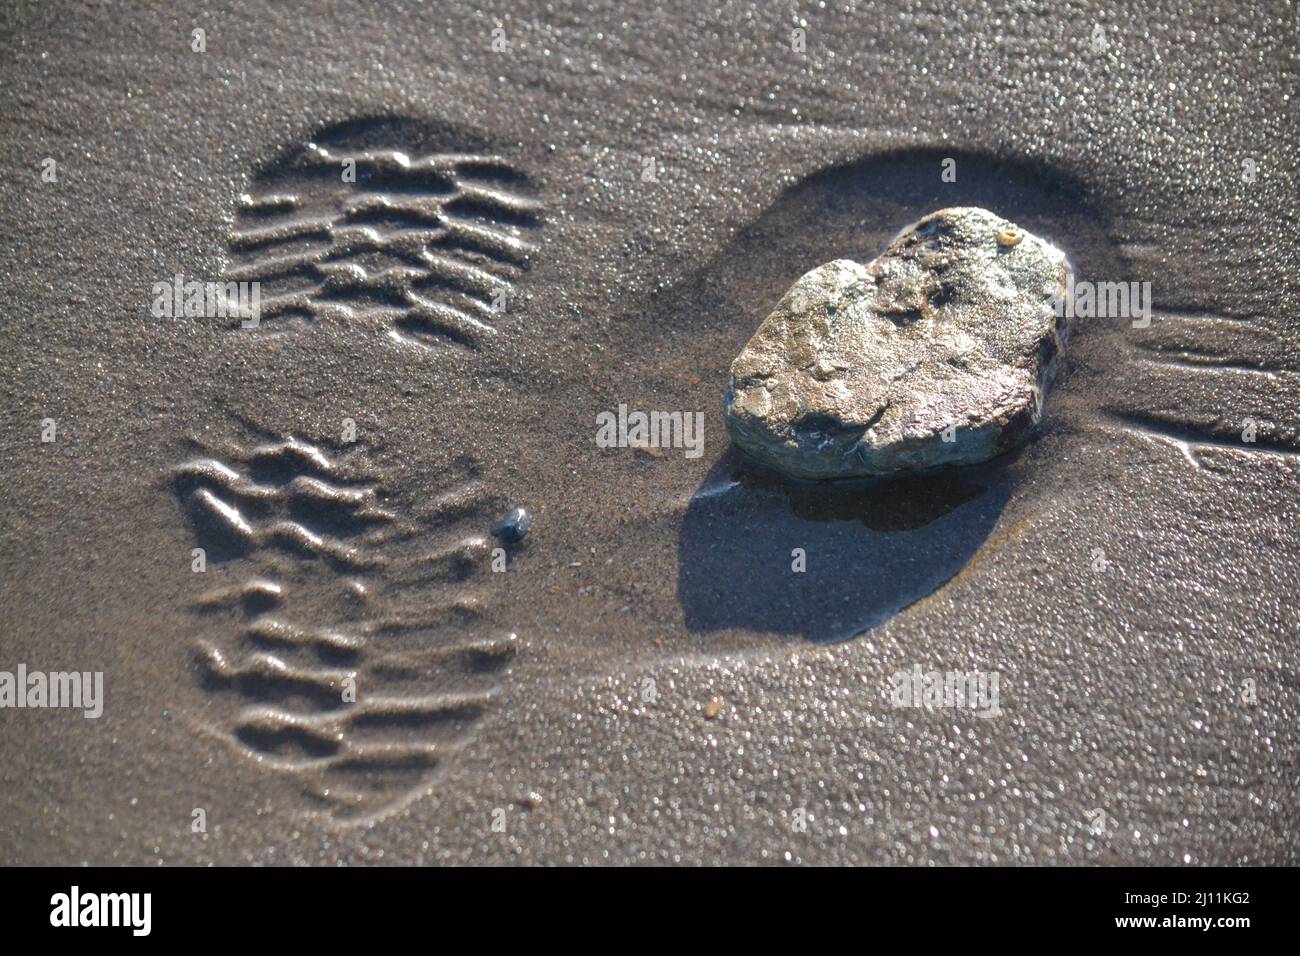 Shoe Print à côté D'Une pierre - empreinte sur Une plage de sable - Sunny Day - Sole Print - Beach Walking Holidays - Winter Sunshine - North Yorkshire - UK Banque D'Images